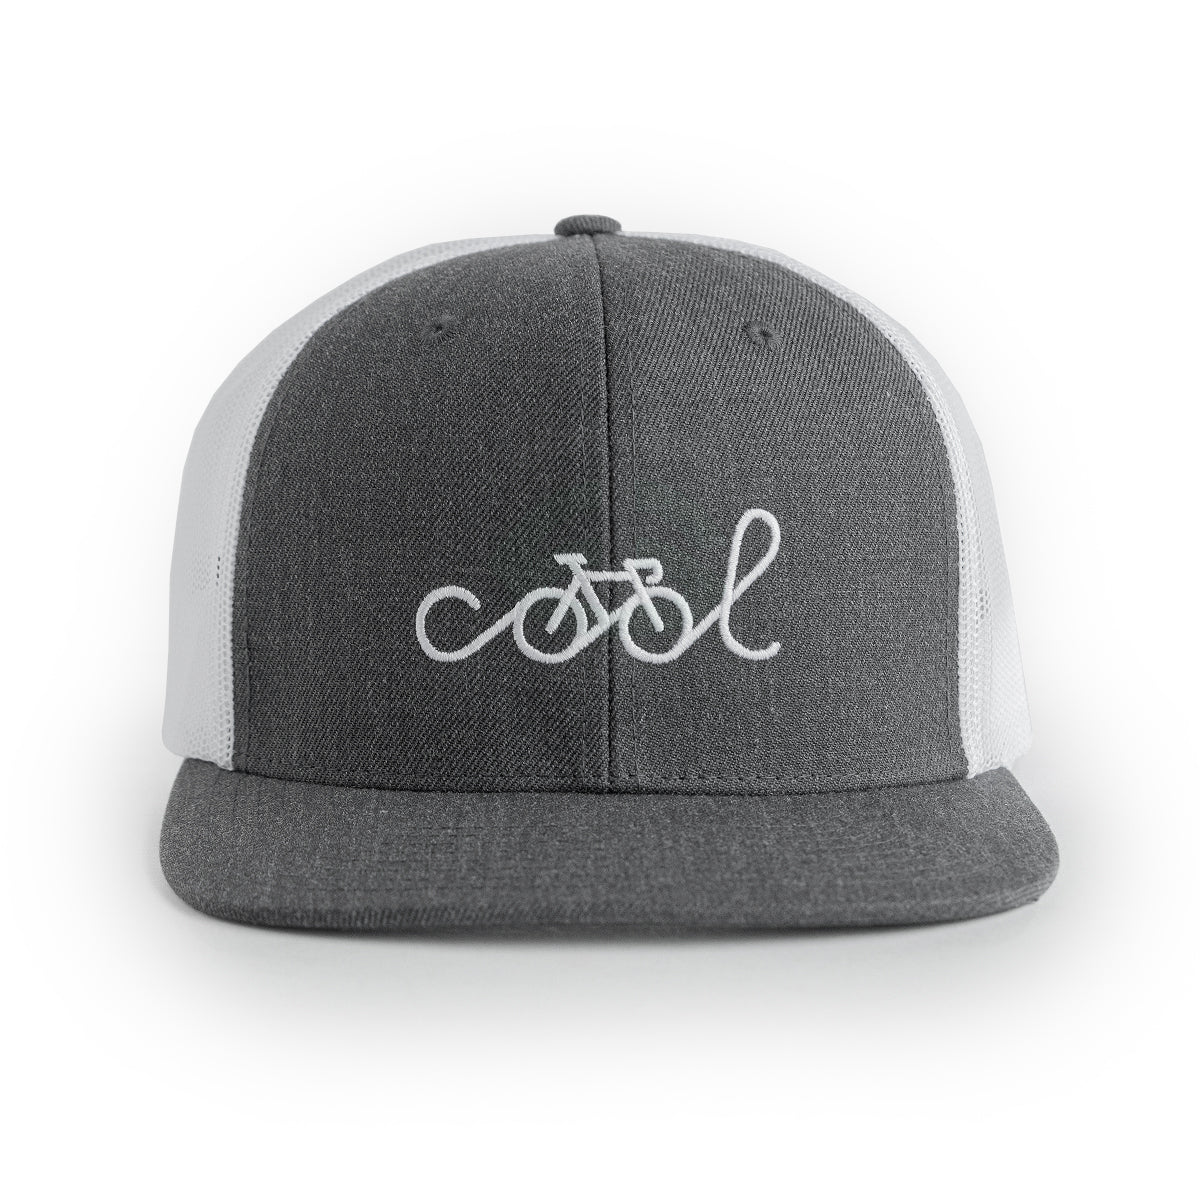 Cool Hat (Trucker)